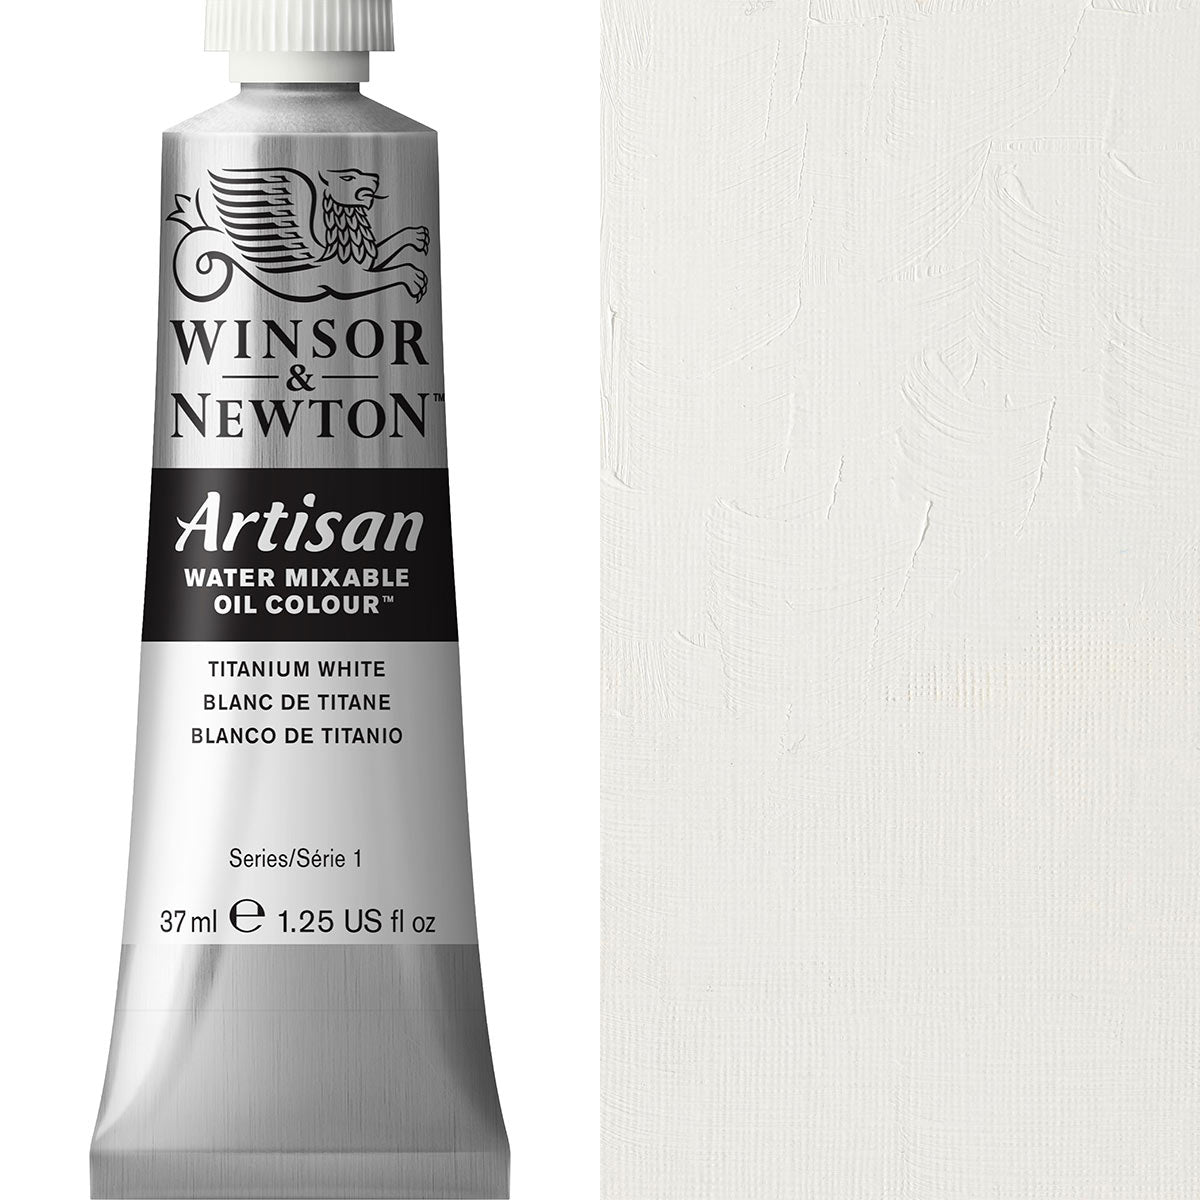 Winsor and Newton - Artisan Oil Colour Watermixable - 37ml - Titanium White